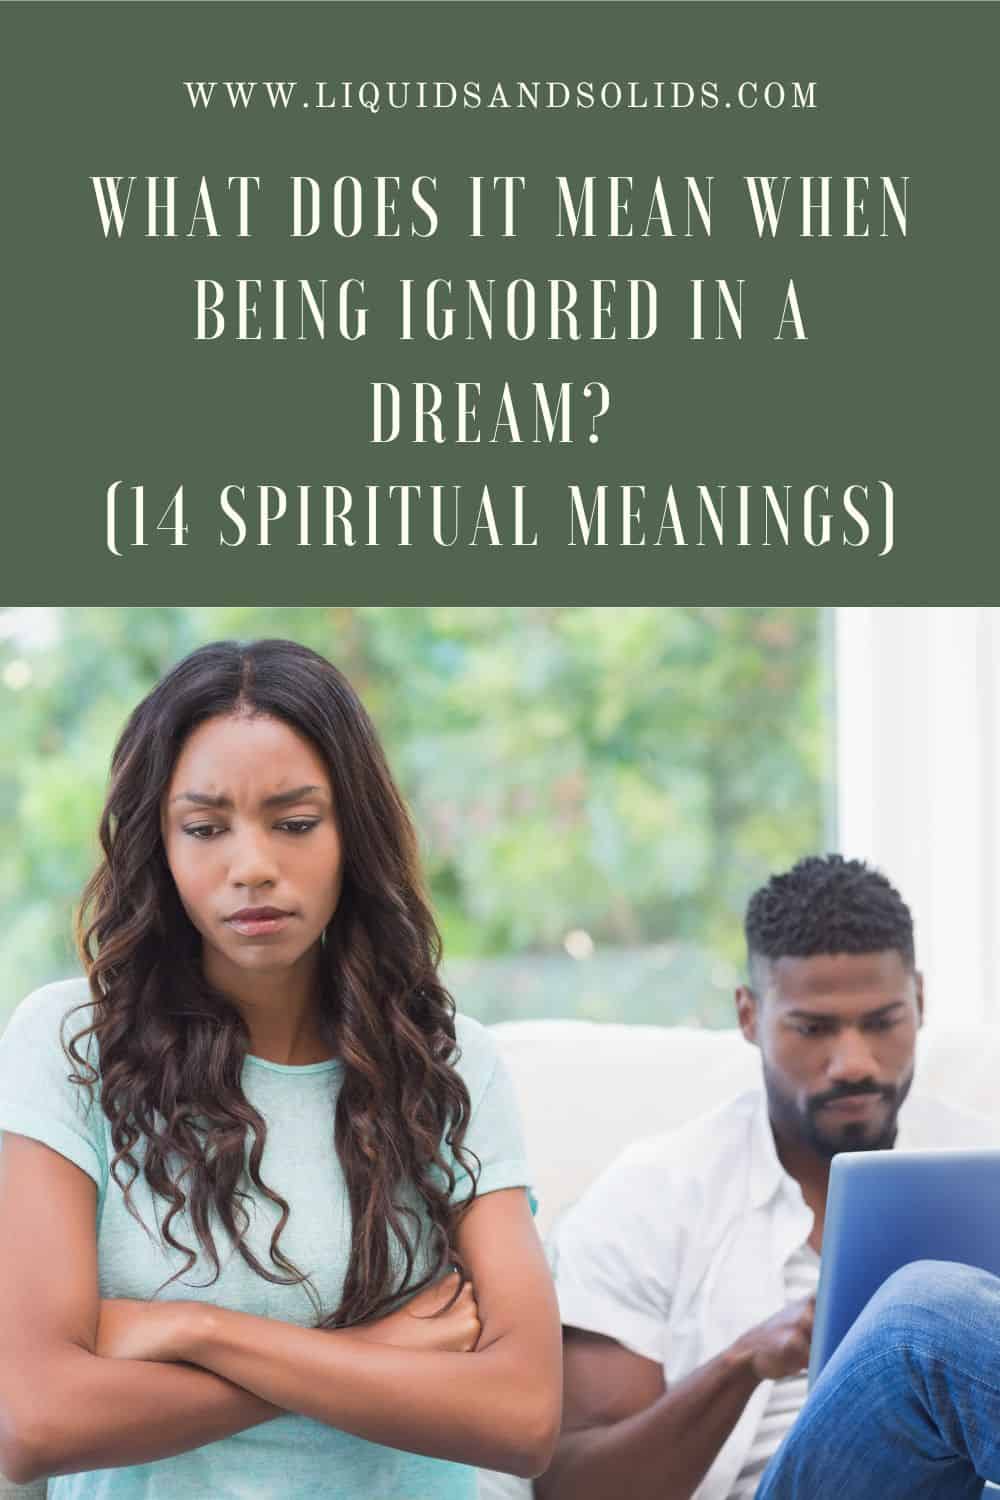  Mit jelent, ha álmában figyelmen kívül hagynak? (14 spirituális jelentés)